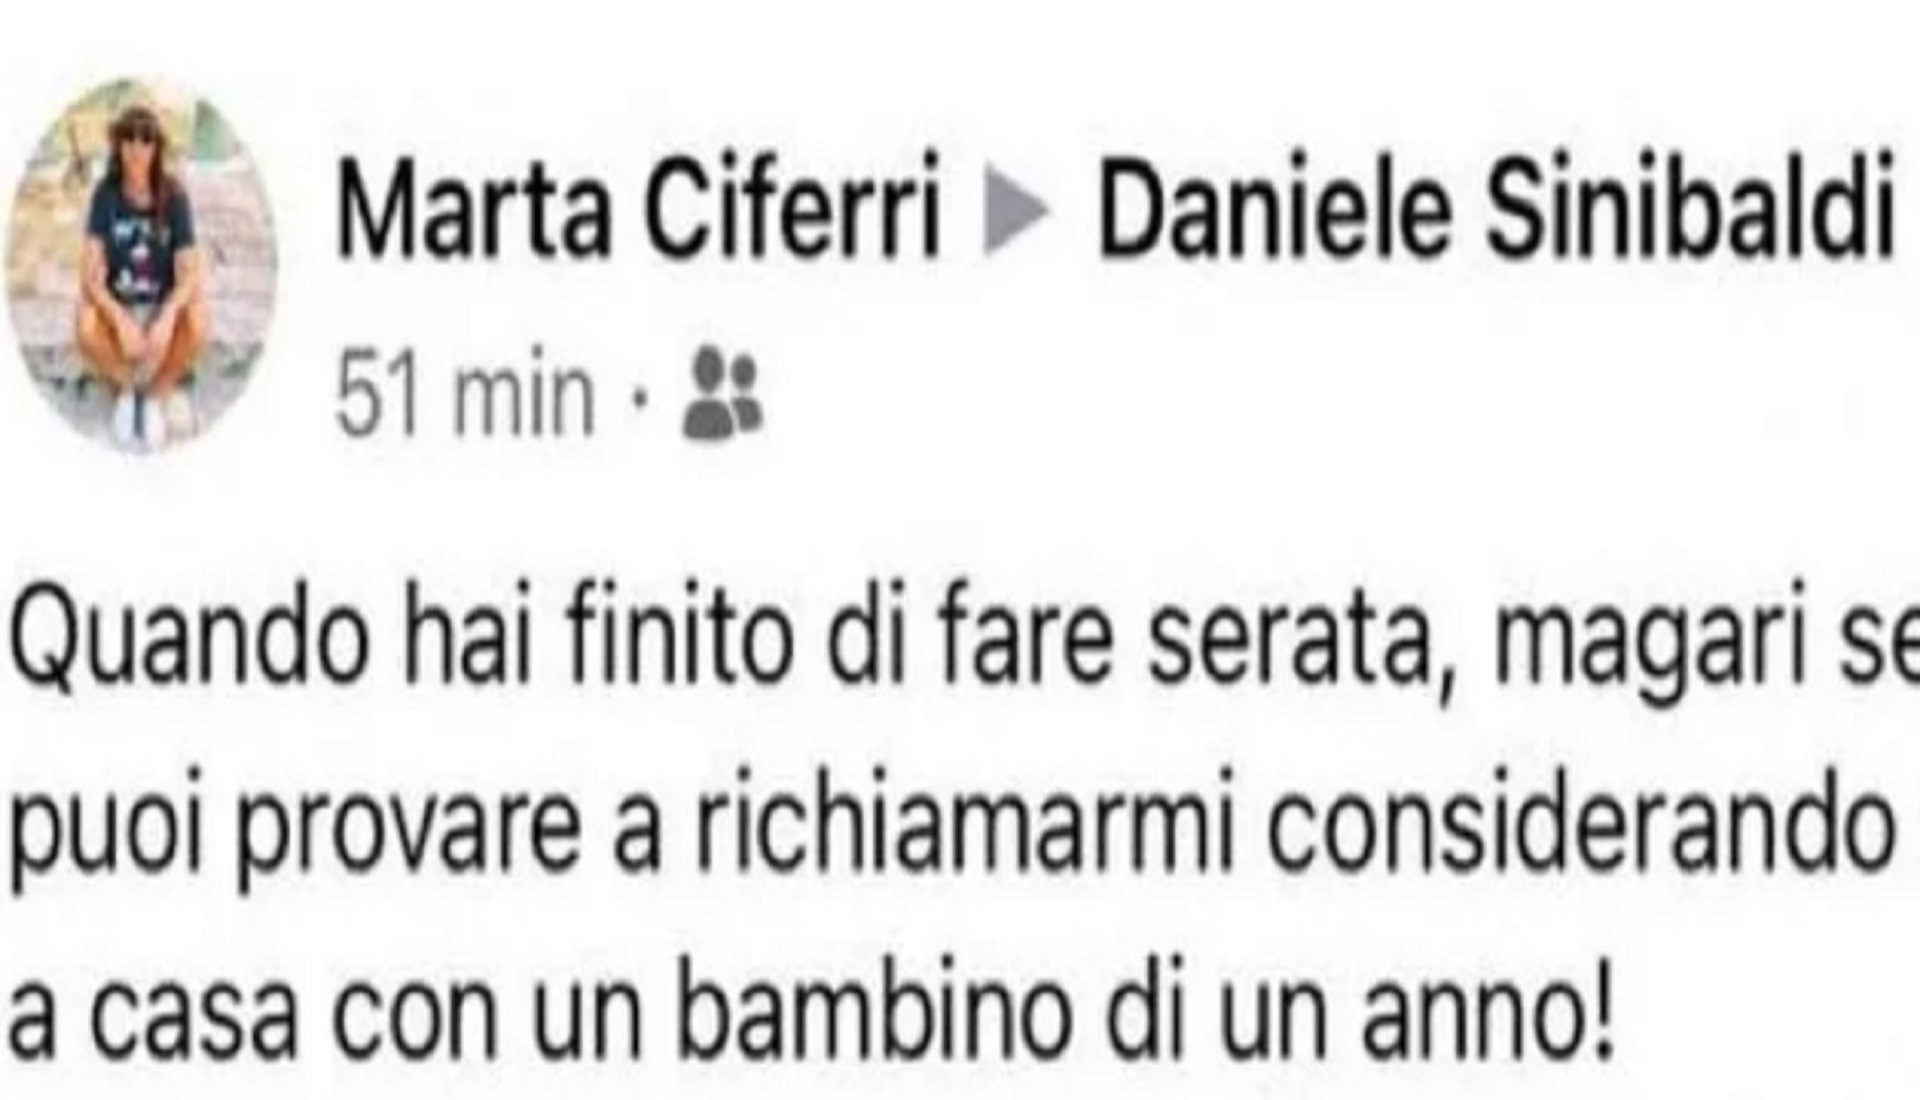 Il sindaco di Rieti esce a far serata, il rimprovero della moglie su Facebook diventa virale